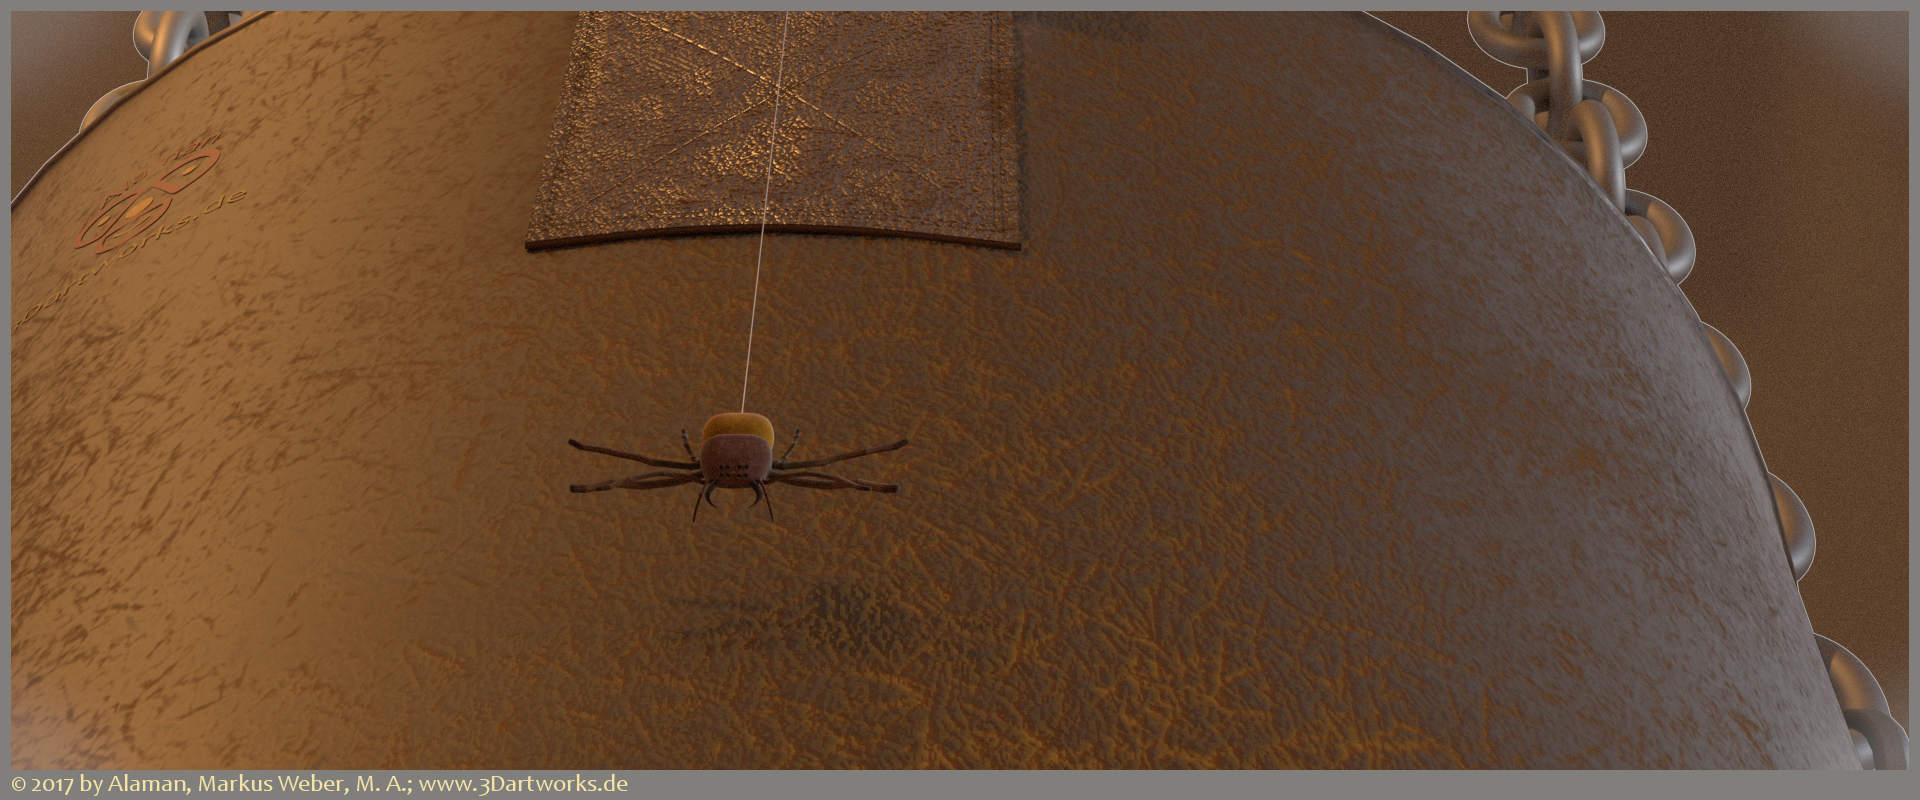 Design d'intérieur : attaque d'une araignée dans une pièce sombre et étroite